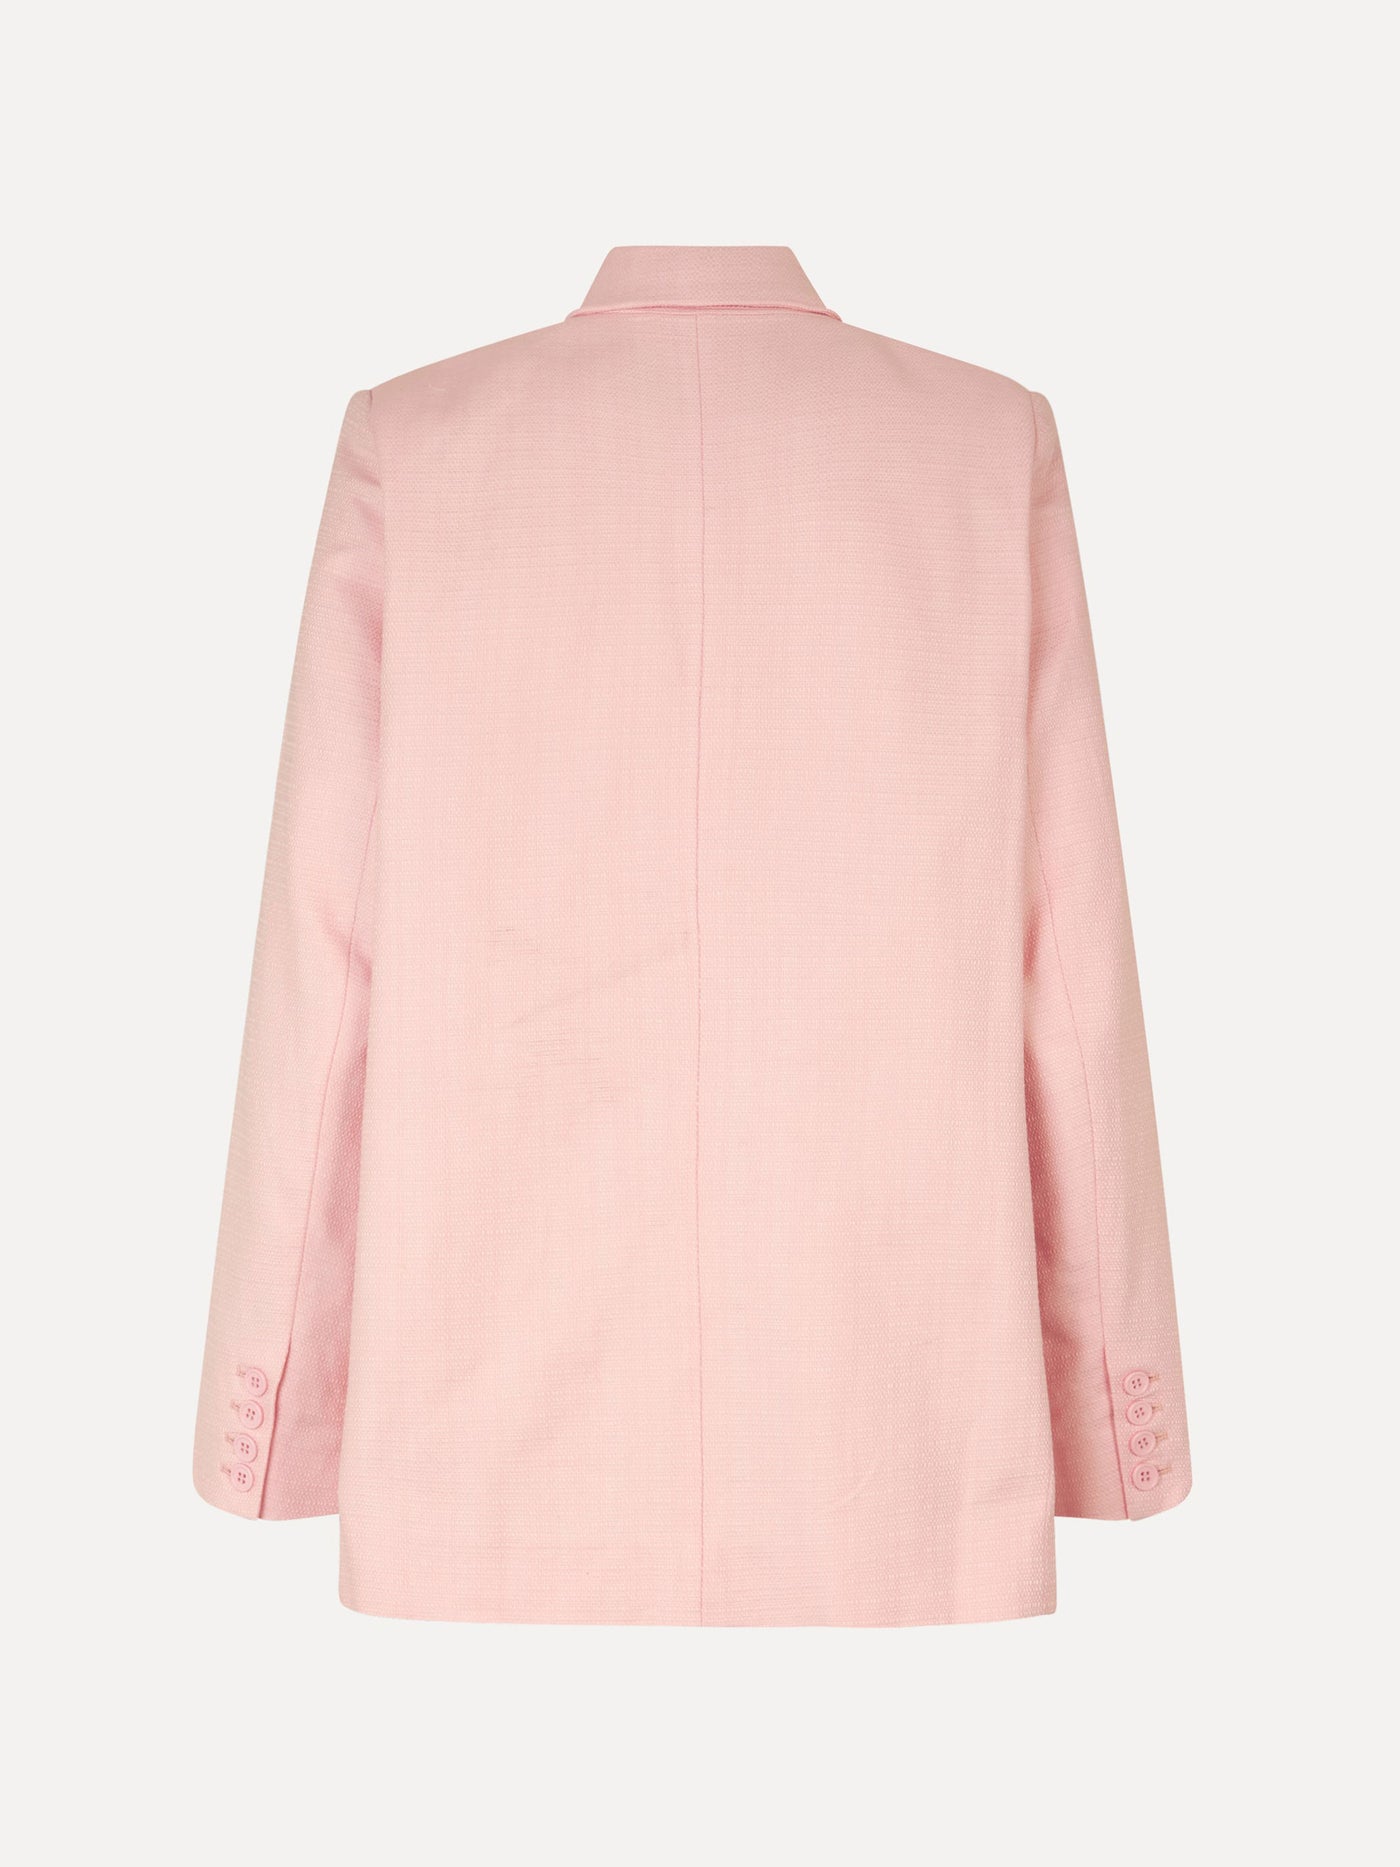 Steely blazer, pink